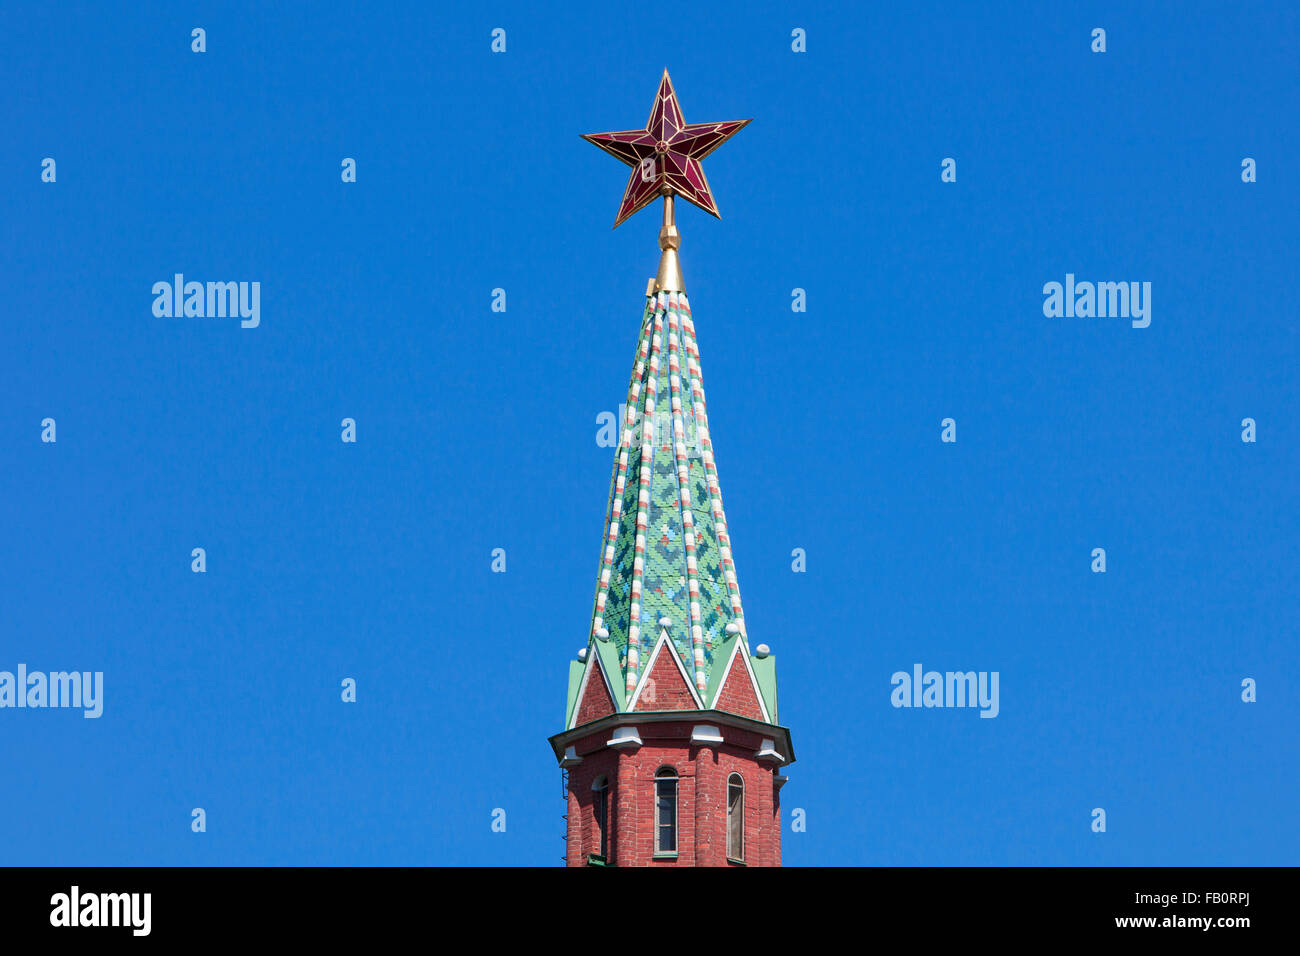 Dettaglio del crimson star sulla parte superiore dell'acqua che alimenta torre o Torre Vodovzvodnaya (1488) del Cremlino a Mosca, Russia Foto Stock